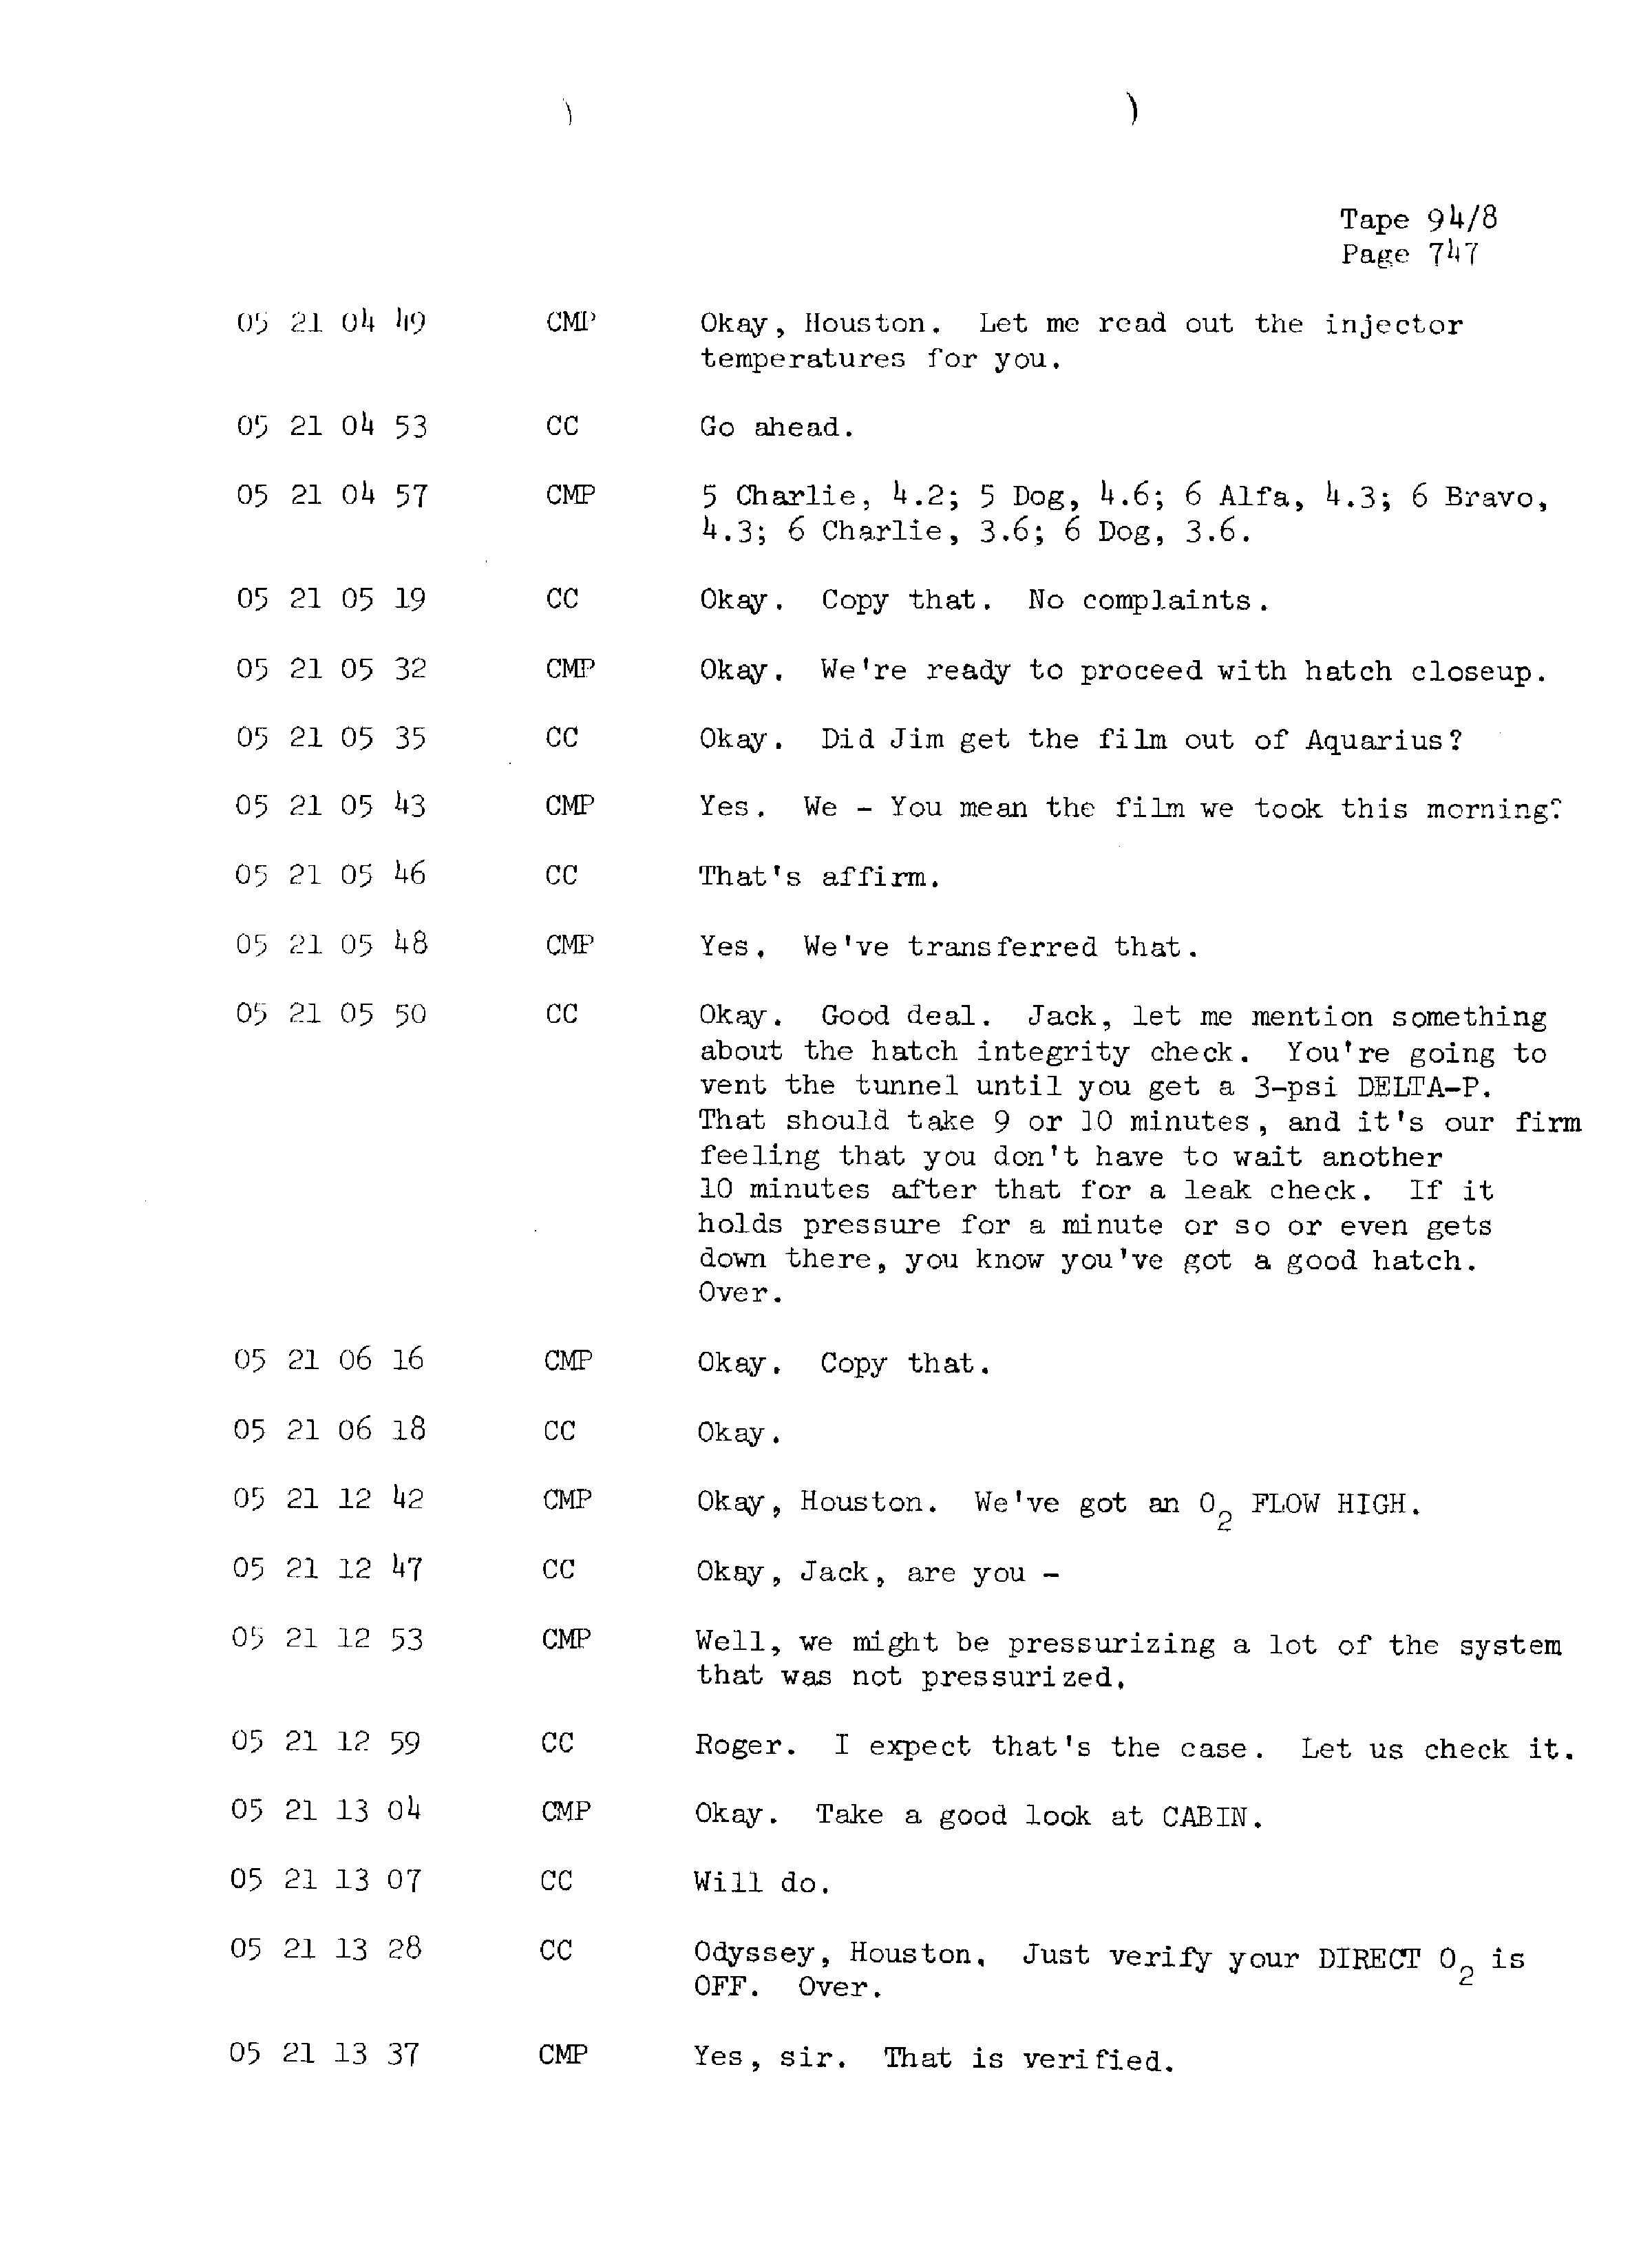 Page 754 of Apollo 13’s original transcript